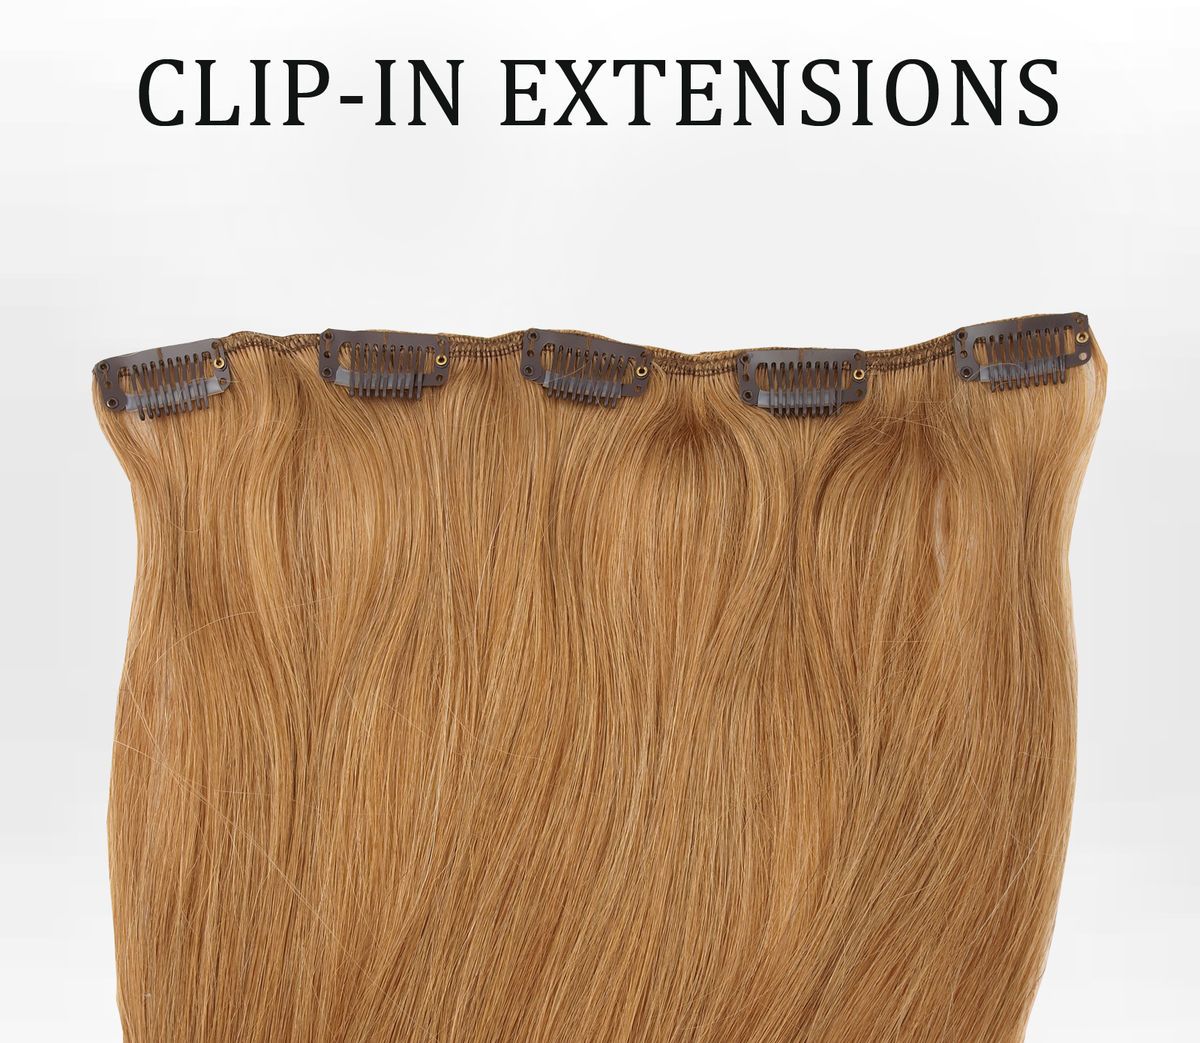 Extensions Clip In Tresse mit 5 Clips, 60cm Echthaar zur